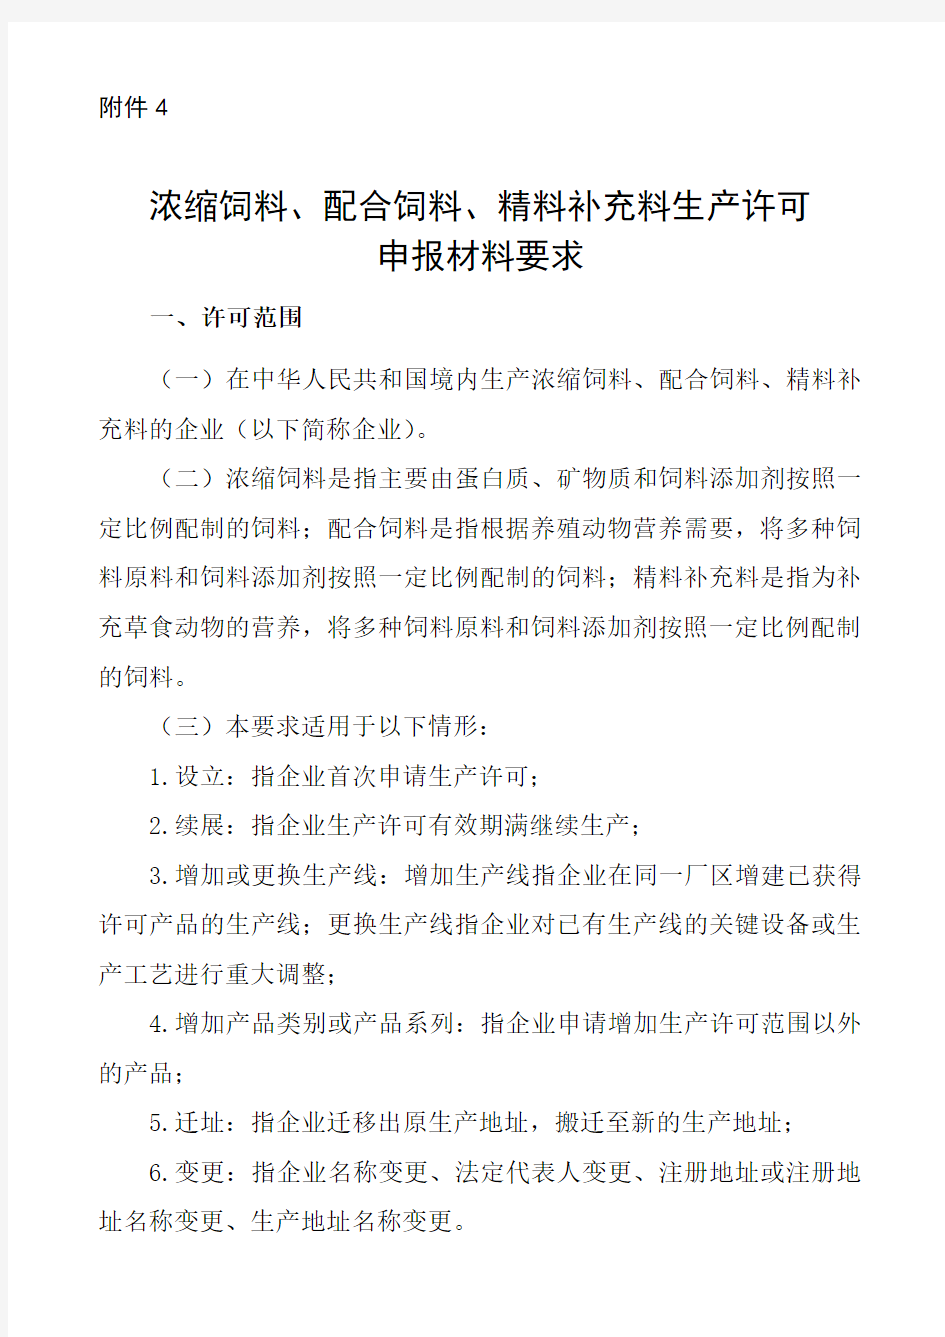 中华人民共和国农业部公告第浓缩配合精料补充料生产许可申报材料要求